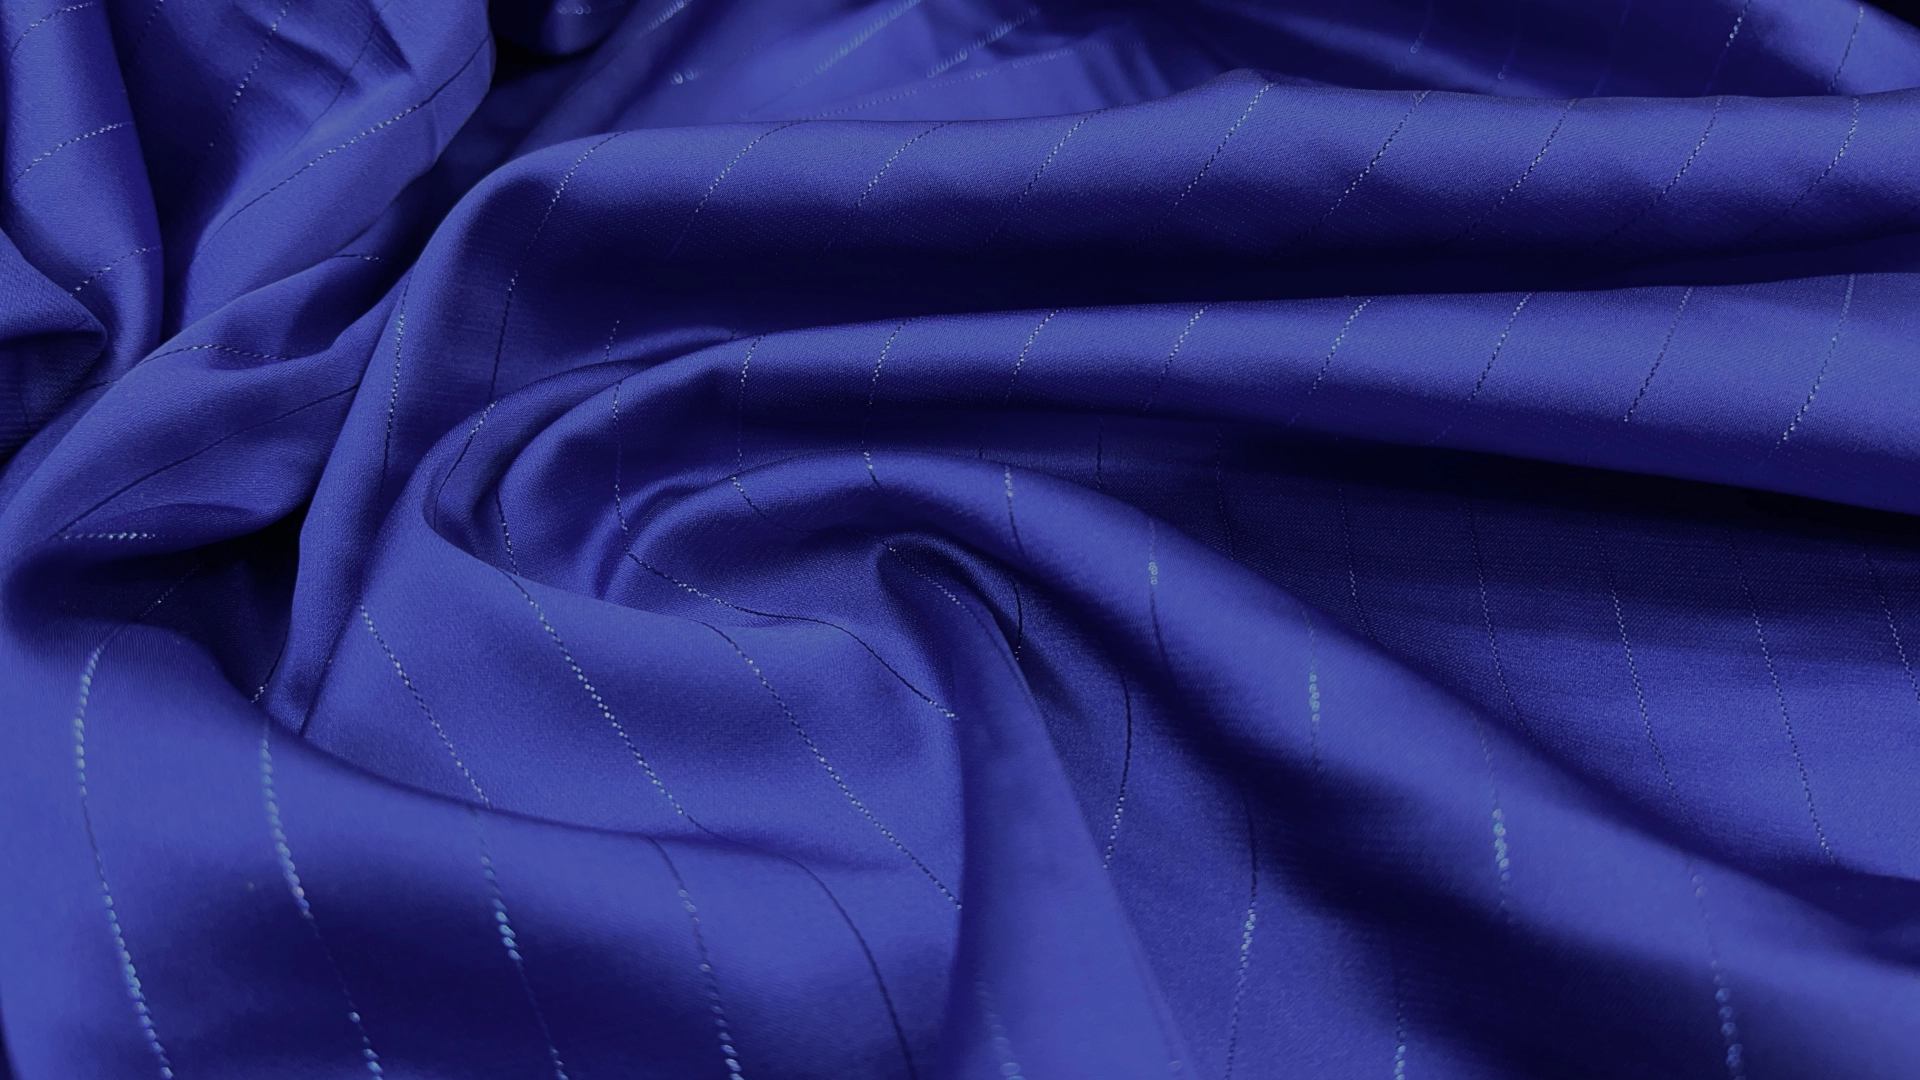 Атлас Армани цвета электрик с люрексовой продольной нитью. Атлас изумительного качества, струящийся, с матовым переливом как у натурального шёлка и с бархатистой изнанкой. Идеален для пошива вечерней рубашки, блузы, топа или платья.